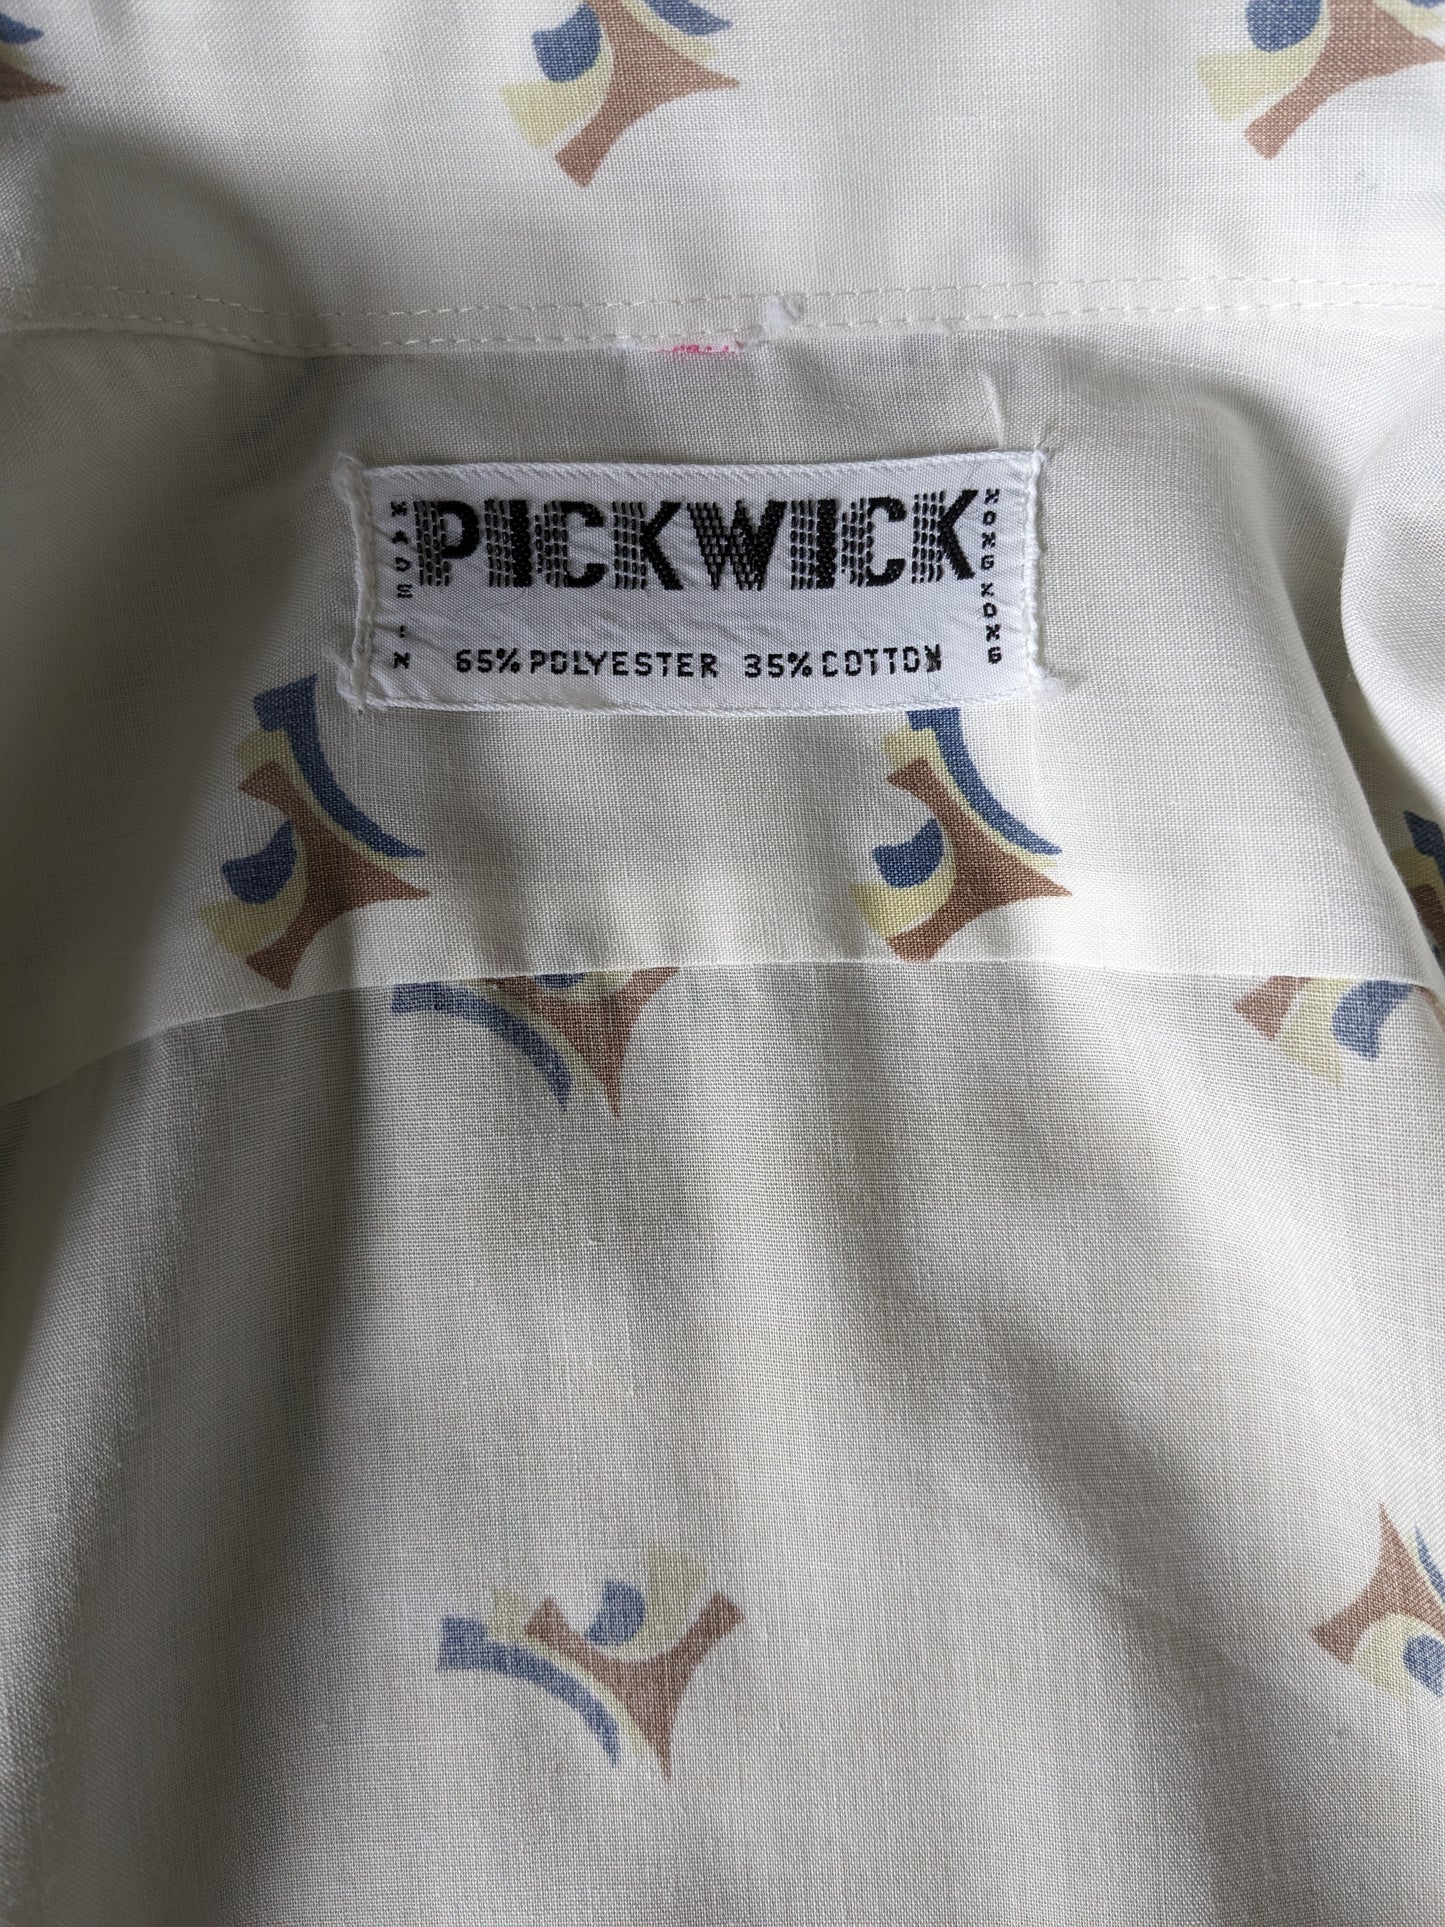 Vintage Pickwick 70er Hemd mit Punktkragen. Weißes braunes Blauprint. Größe 2xl / xxl.